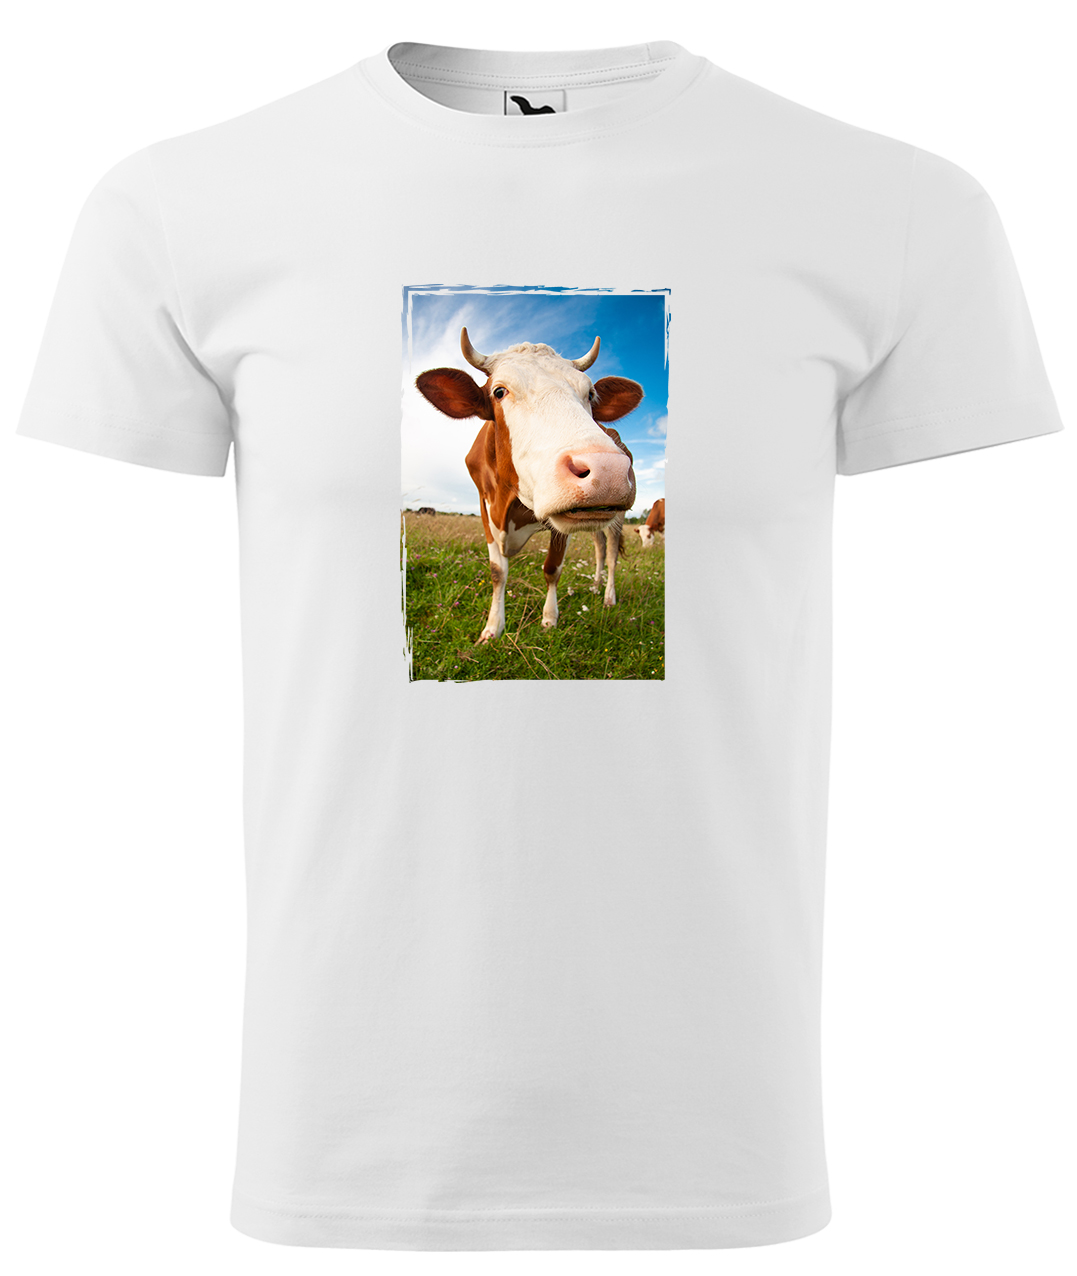 Dětské tričko s krávou - Na pastvě Velikost: 8 let / 134 cm, Barva: Bílá (00), Délka rukávu: Krátký rukáv